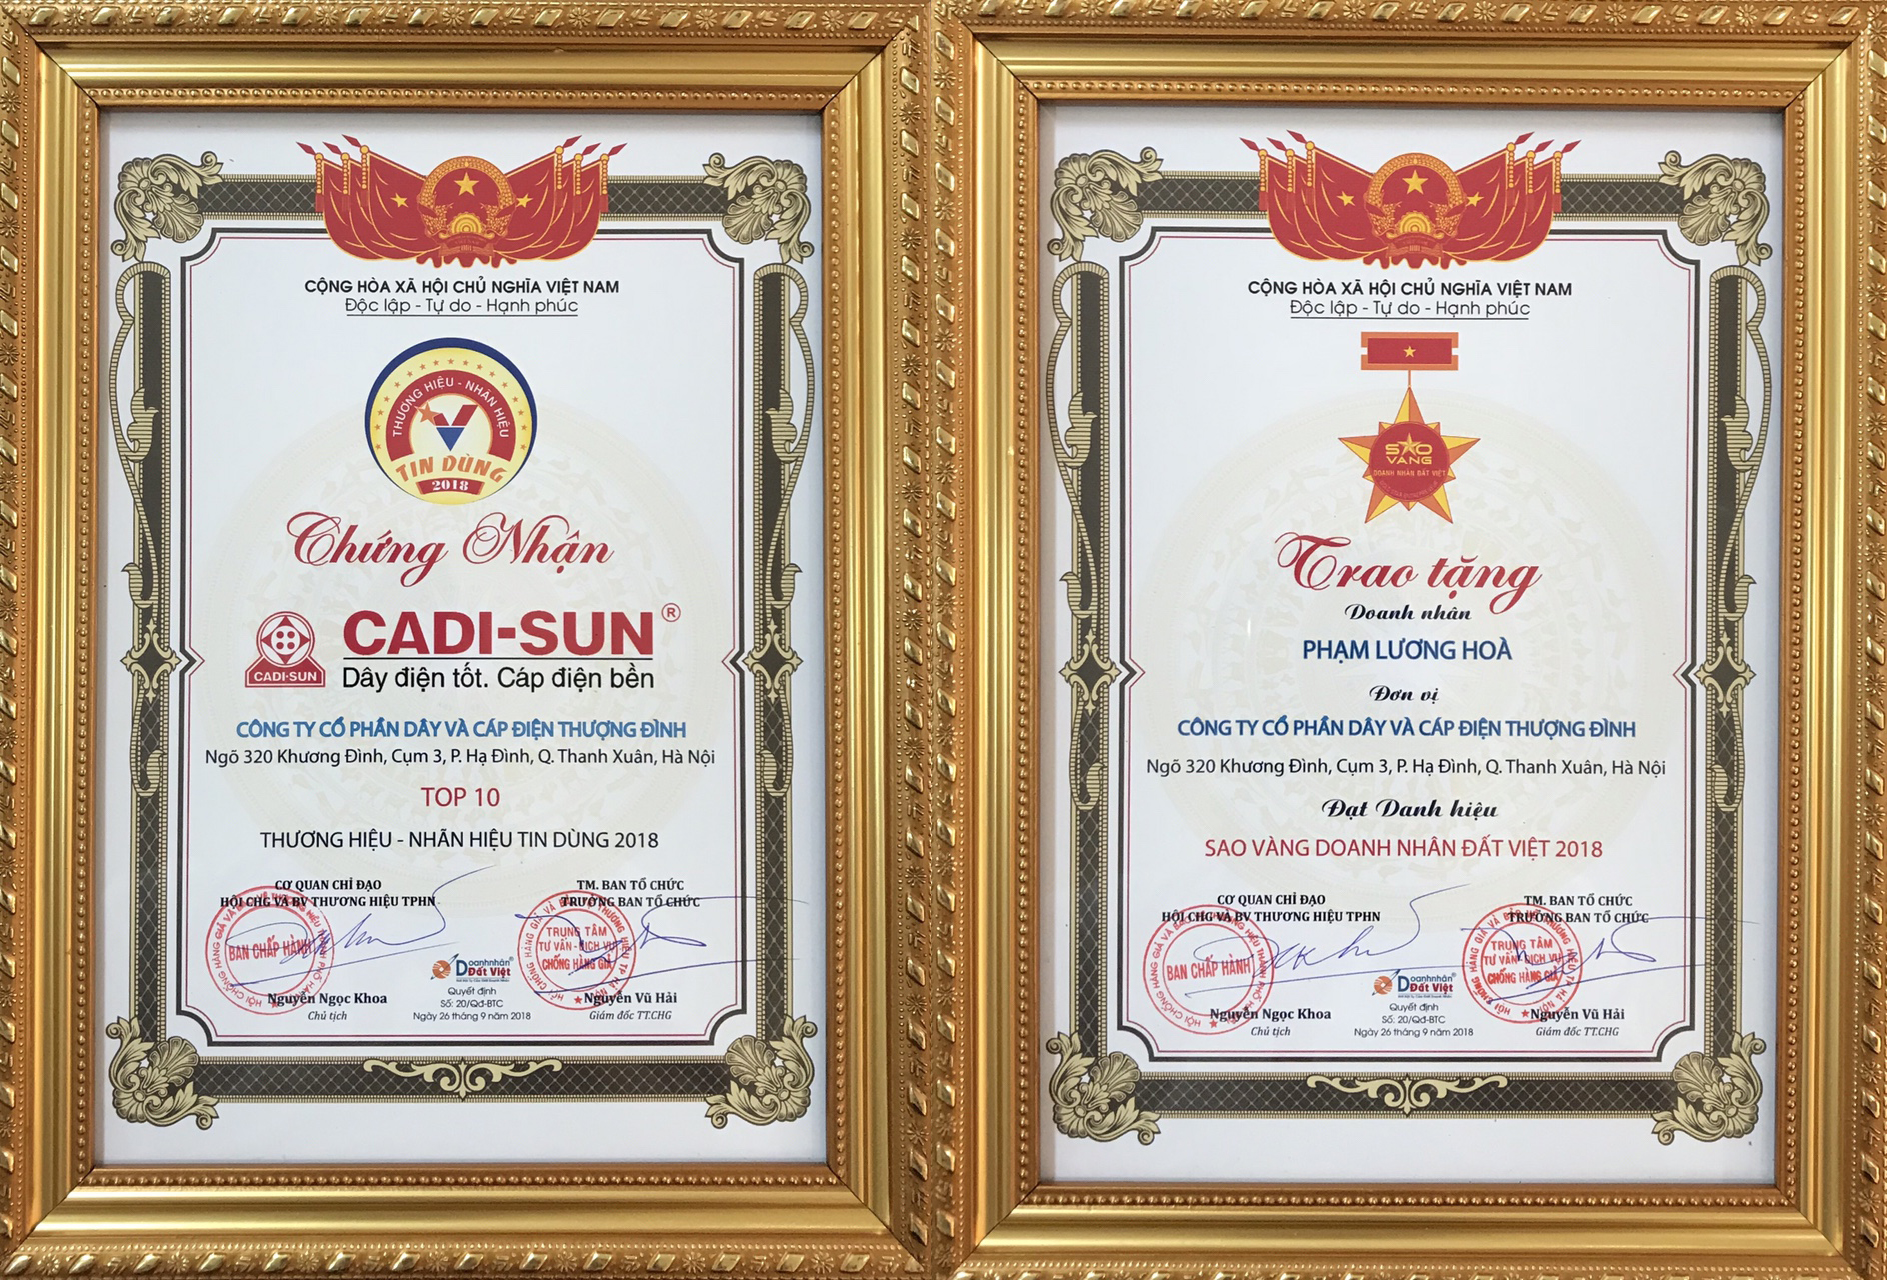 CADI-SUN - Gương mặt Top 10 Thương hiệu tín nhiệm – Sản phẩm, dịch vụ chất lượng cao 2018 và Doanh nhân Sao Vàng Đất Việt 2018